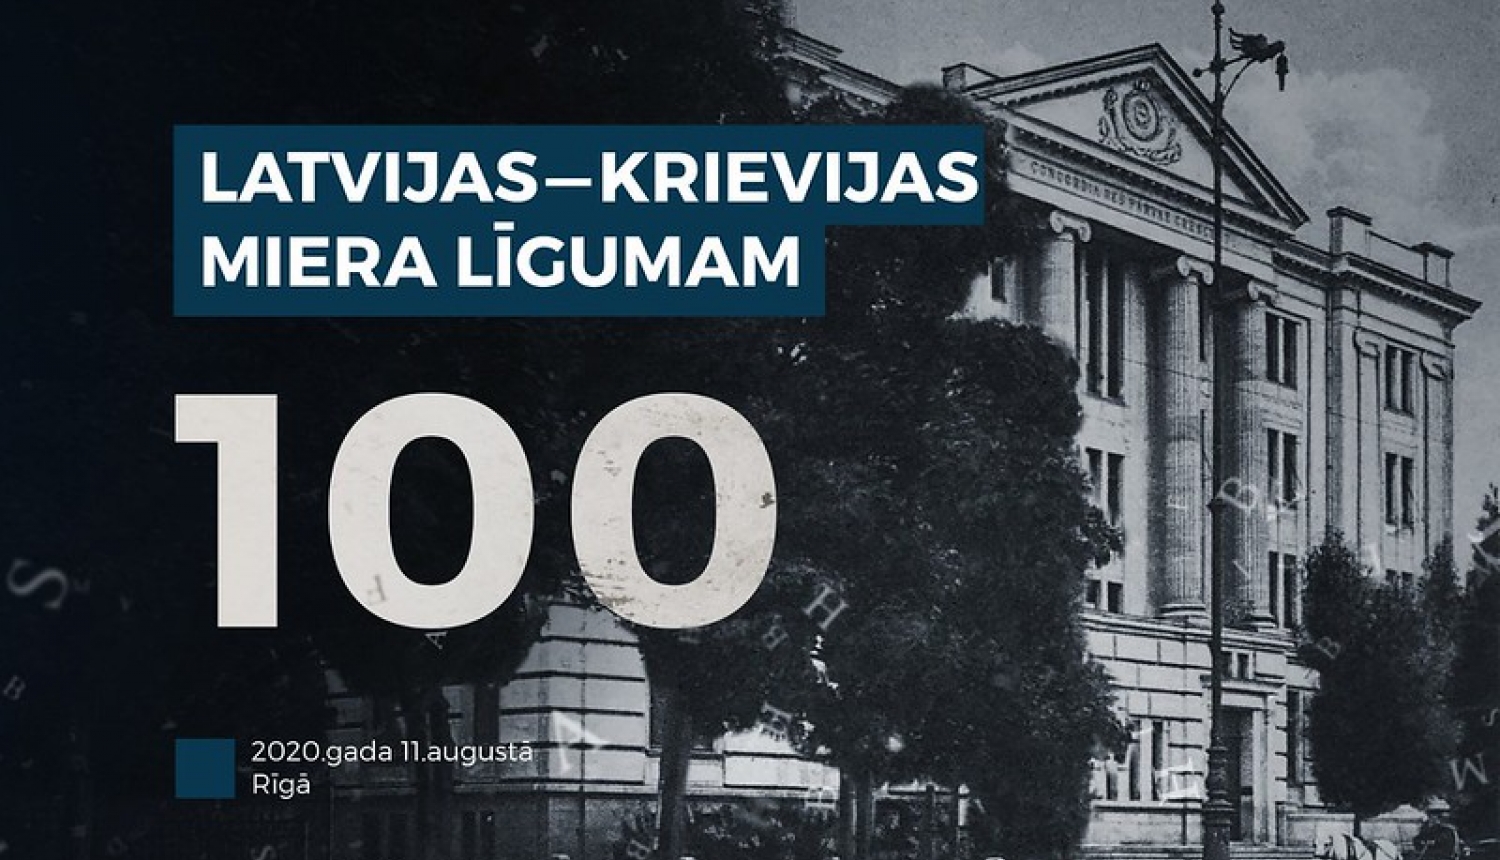 Rīgā atzīmē Latvijas - Krievijas miera līguma parakstīšanas simto gadadienu